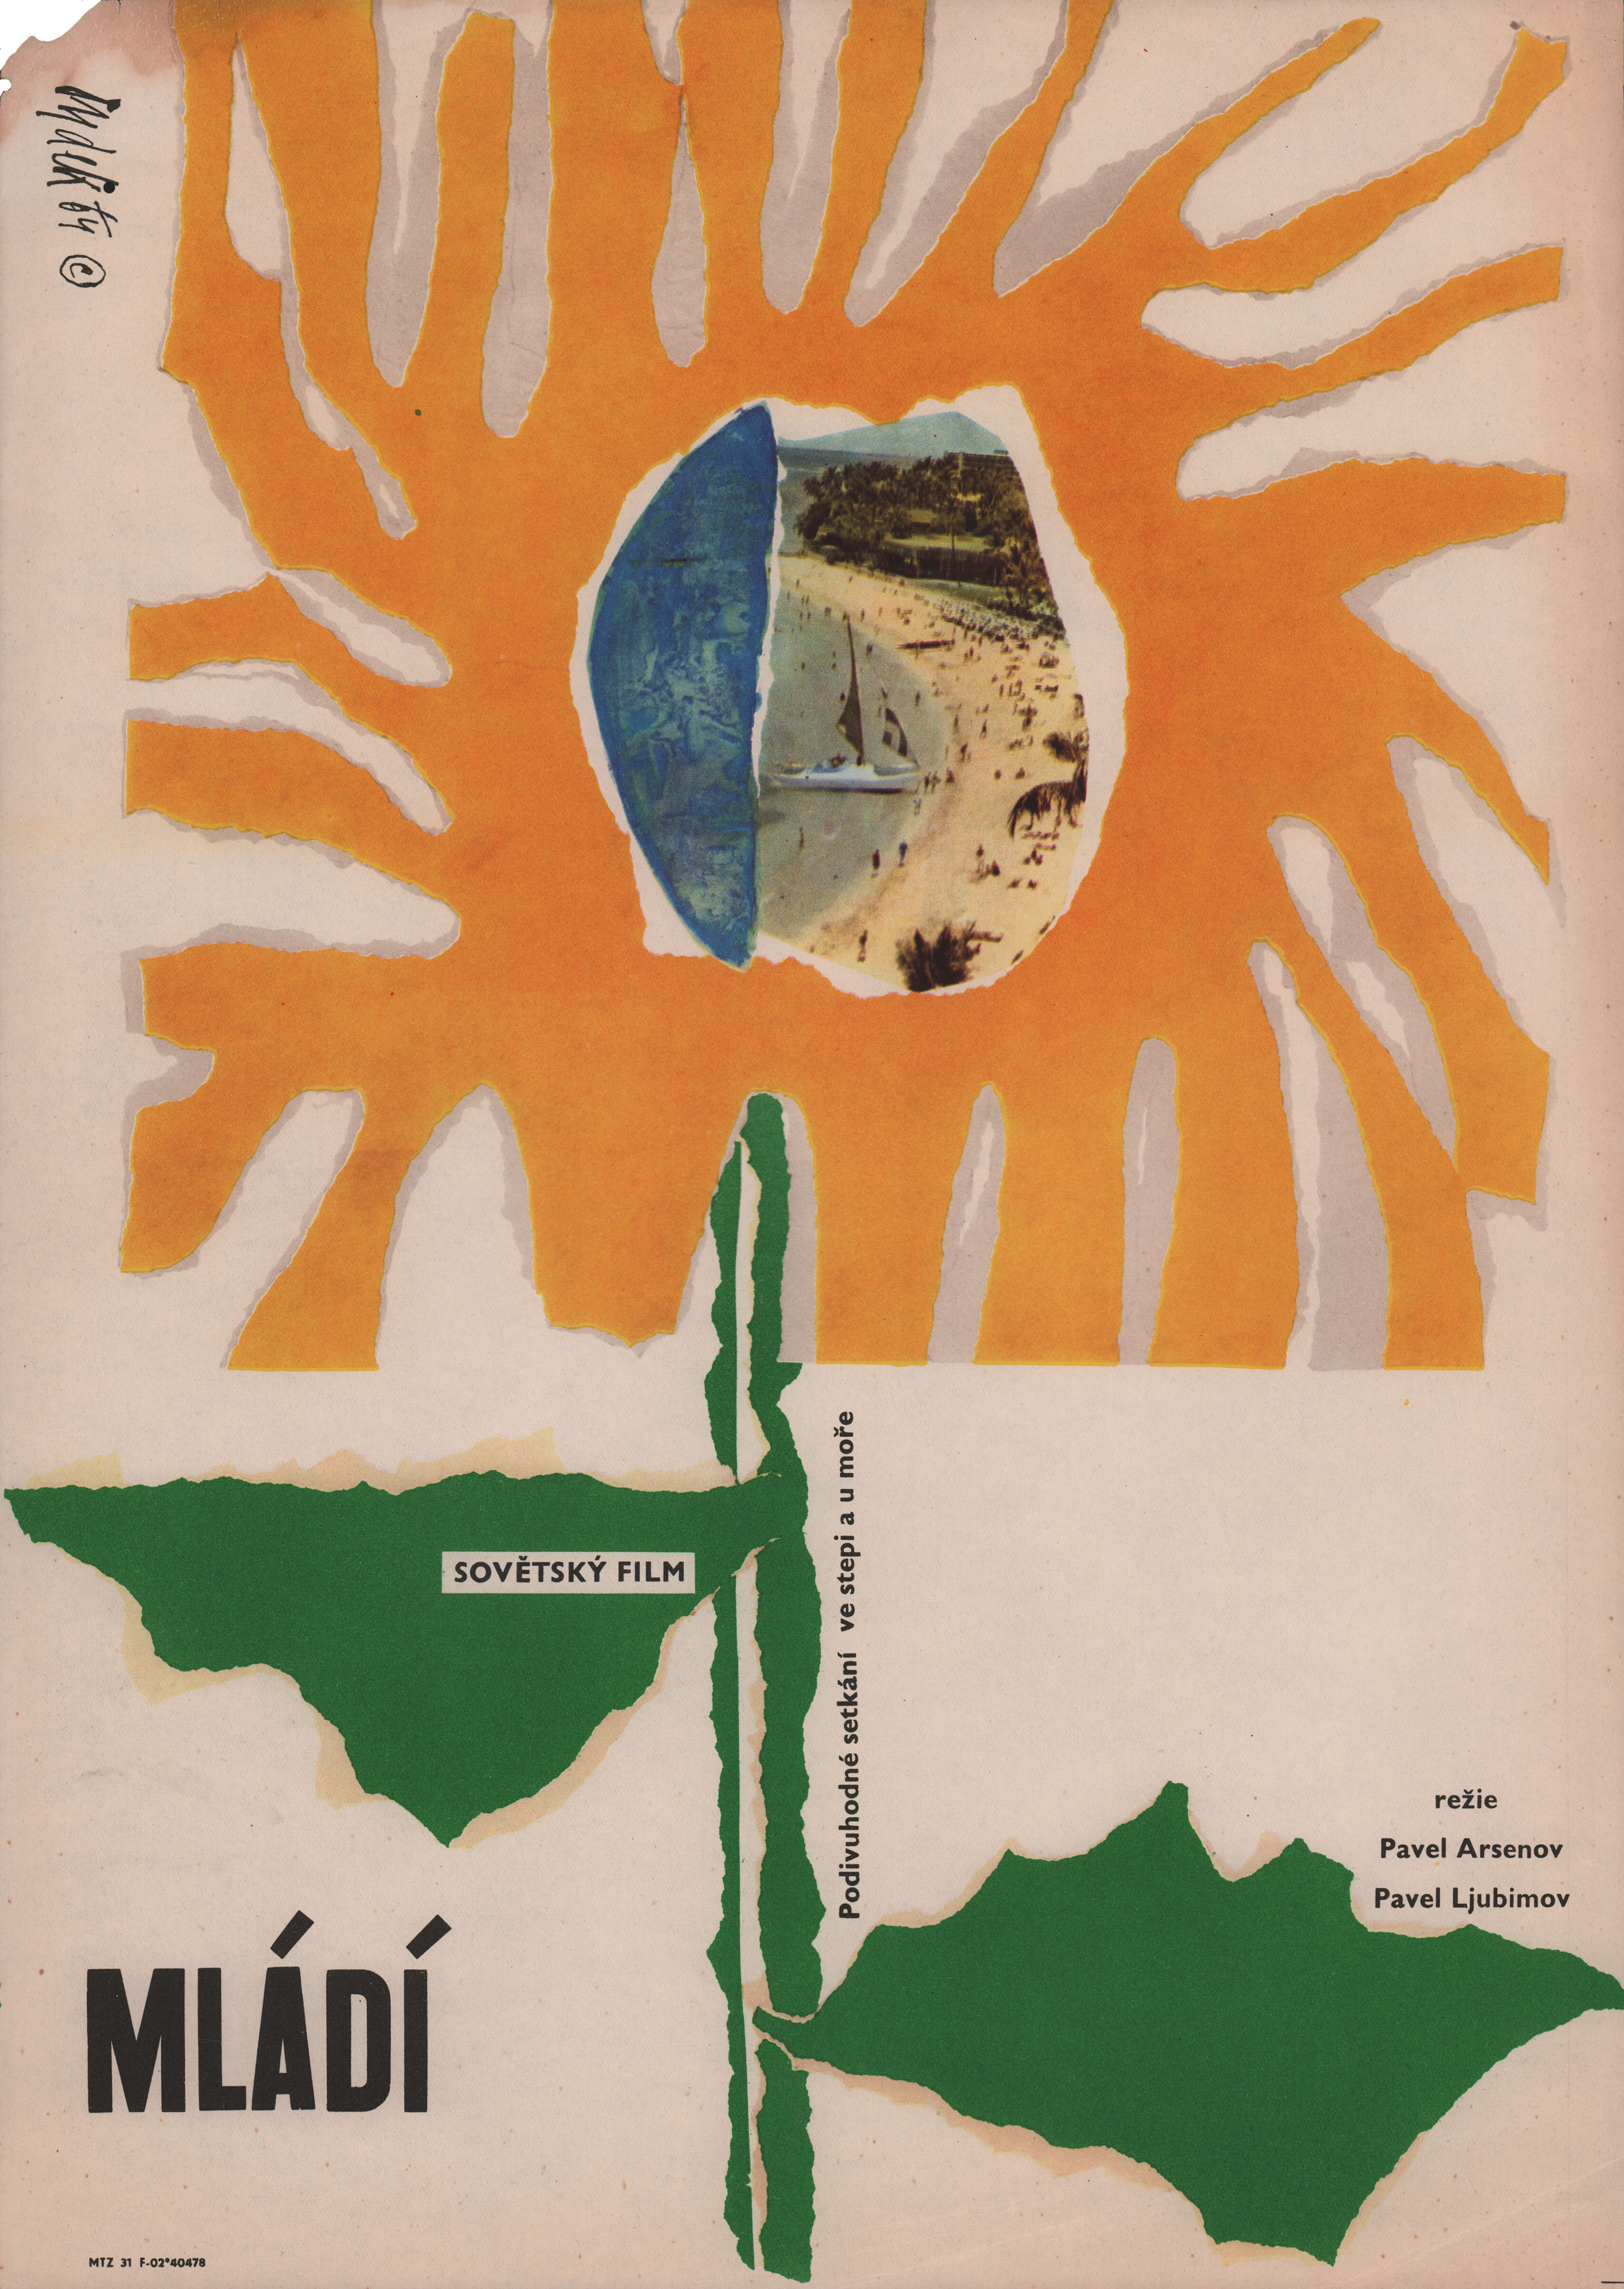 Альманах Юность (режиссёр Павел Любимов, 1964), чехословацкий постер к фильму, автор Ладислав Дыдек, 1964 год